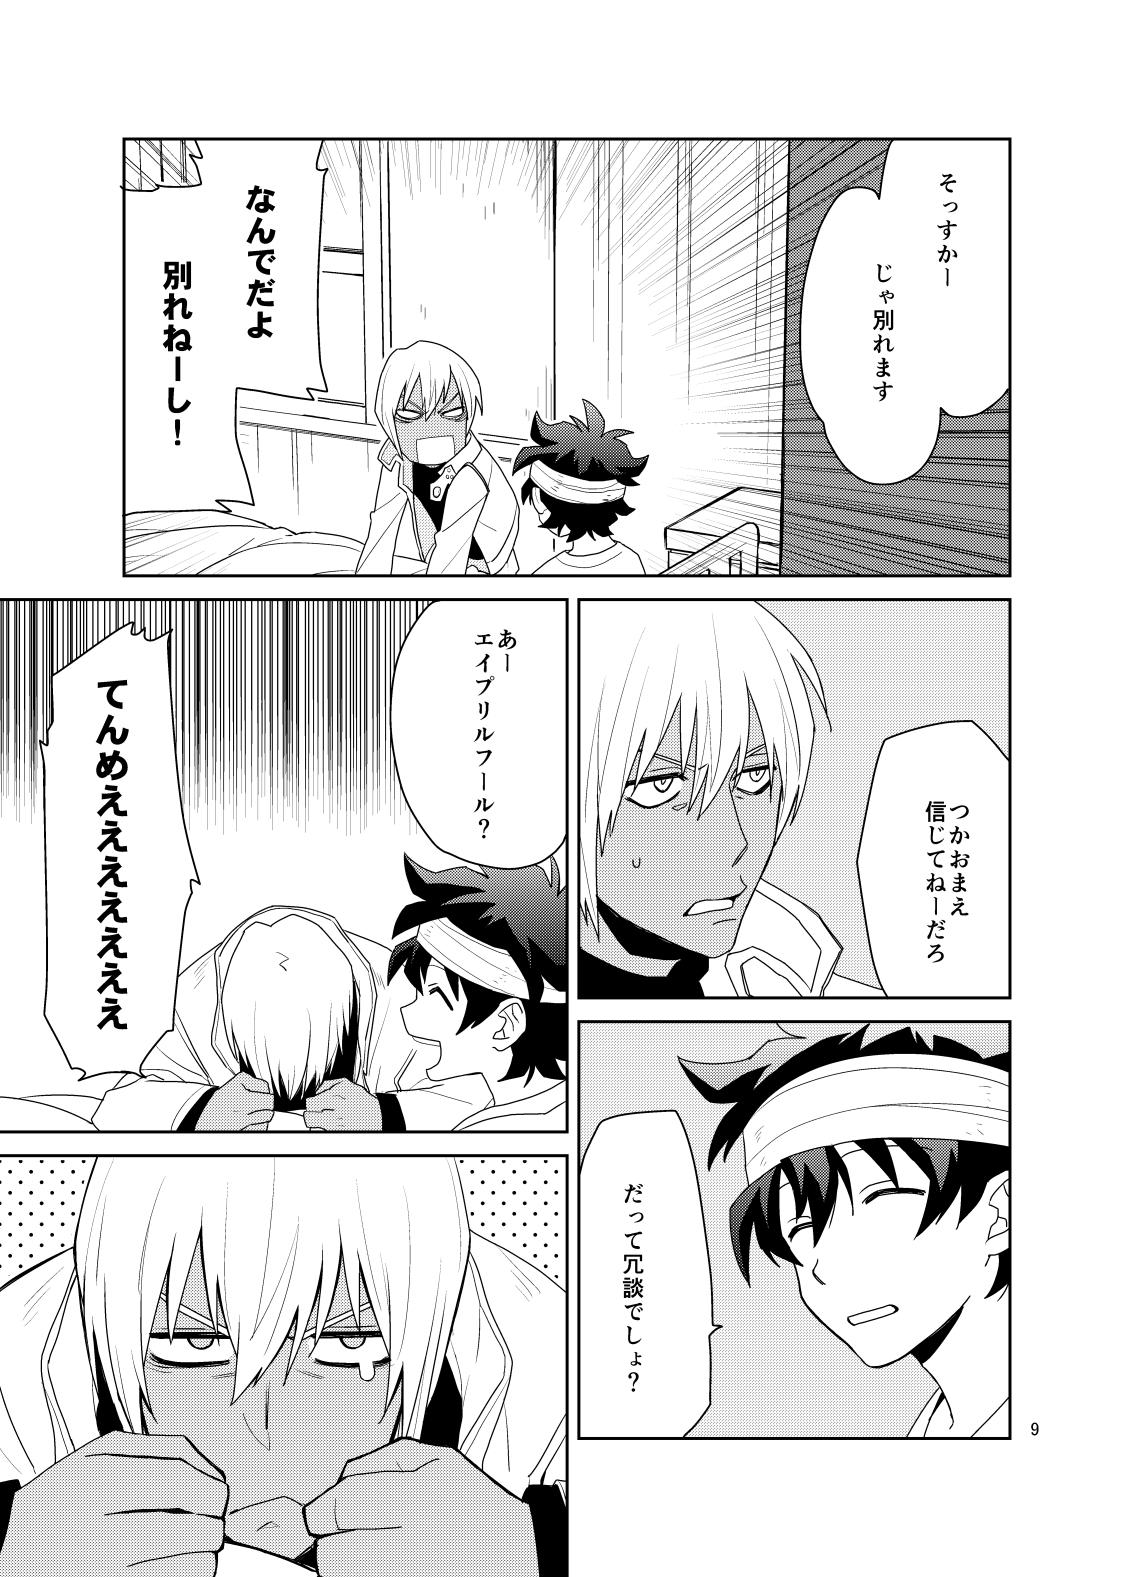 Couch Shinkoku na Error ga Hasseishimashita. - Kekkai sensen Gaysex - Page 8